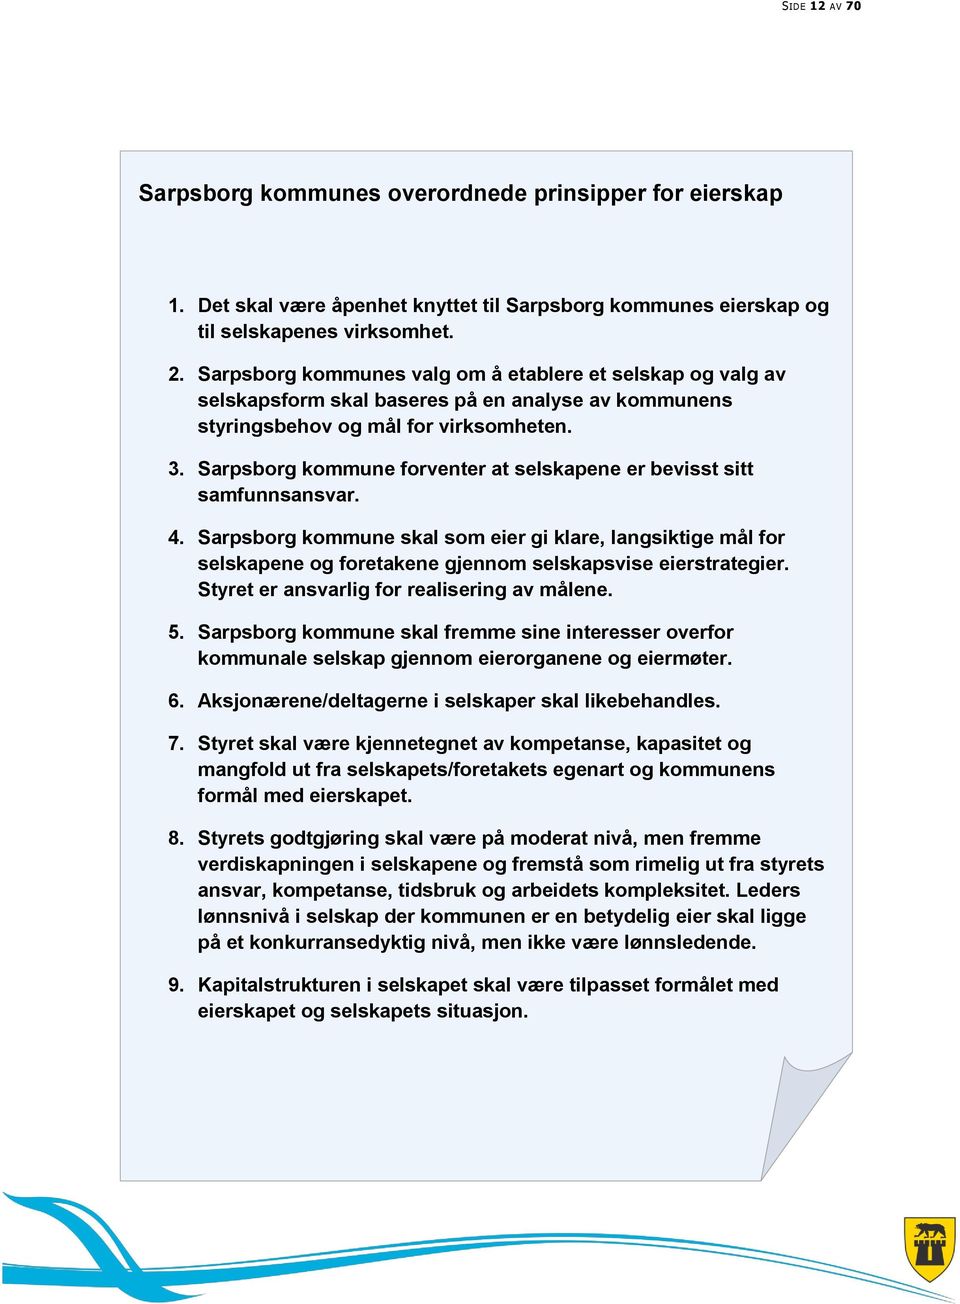 Sarpsborg kommune forventer at selskapene er bevisst sitt samfunnsansvar. 4. Sarpsborg kommune skal som eier gi klare, langsiktige mål for selskapene og foretakene gjennom selskapsvise eierstrategier.